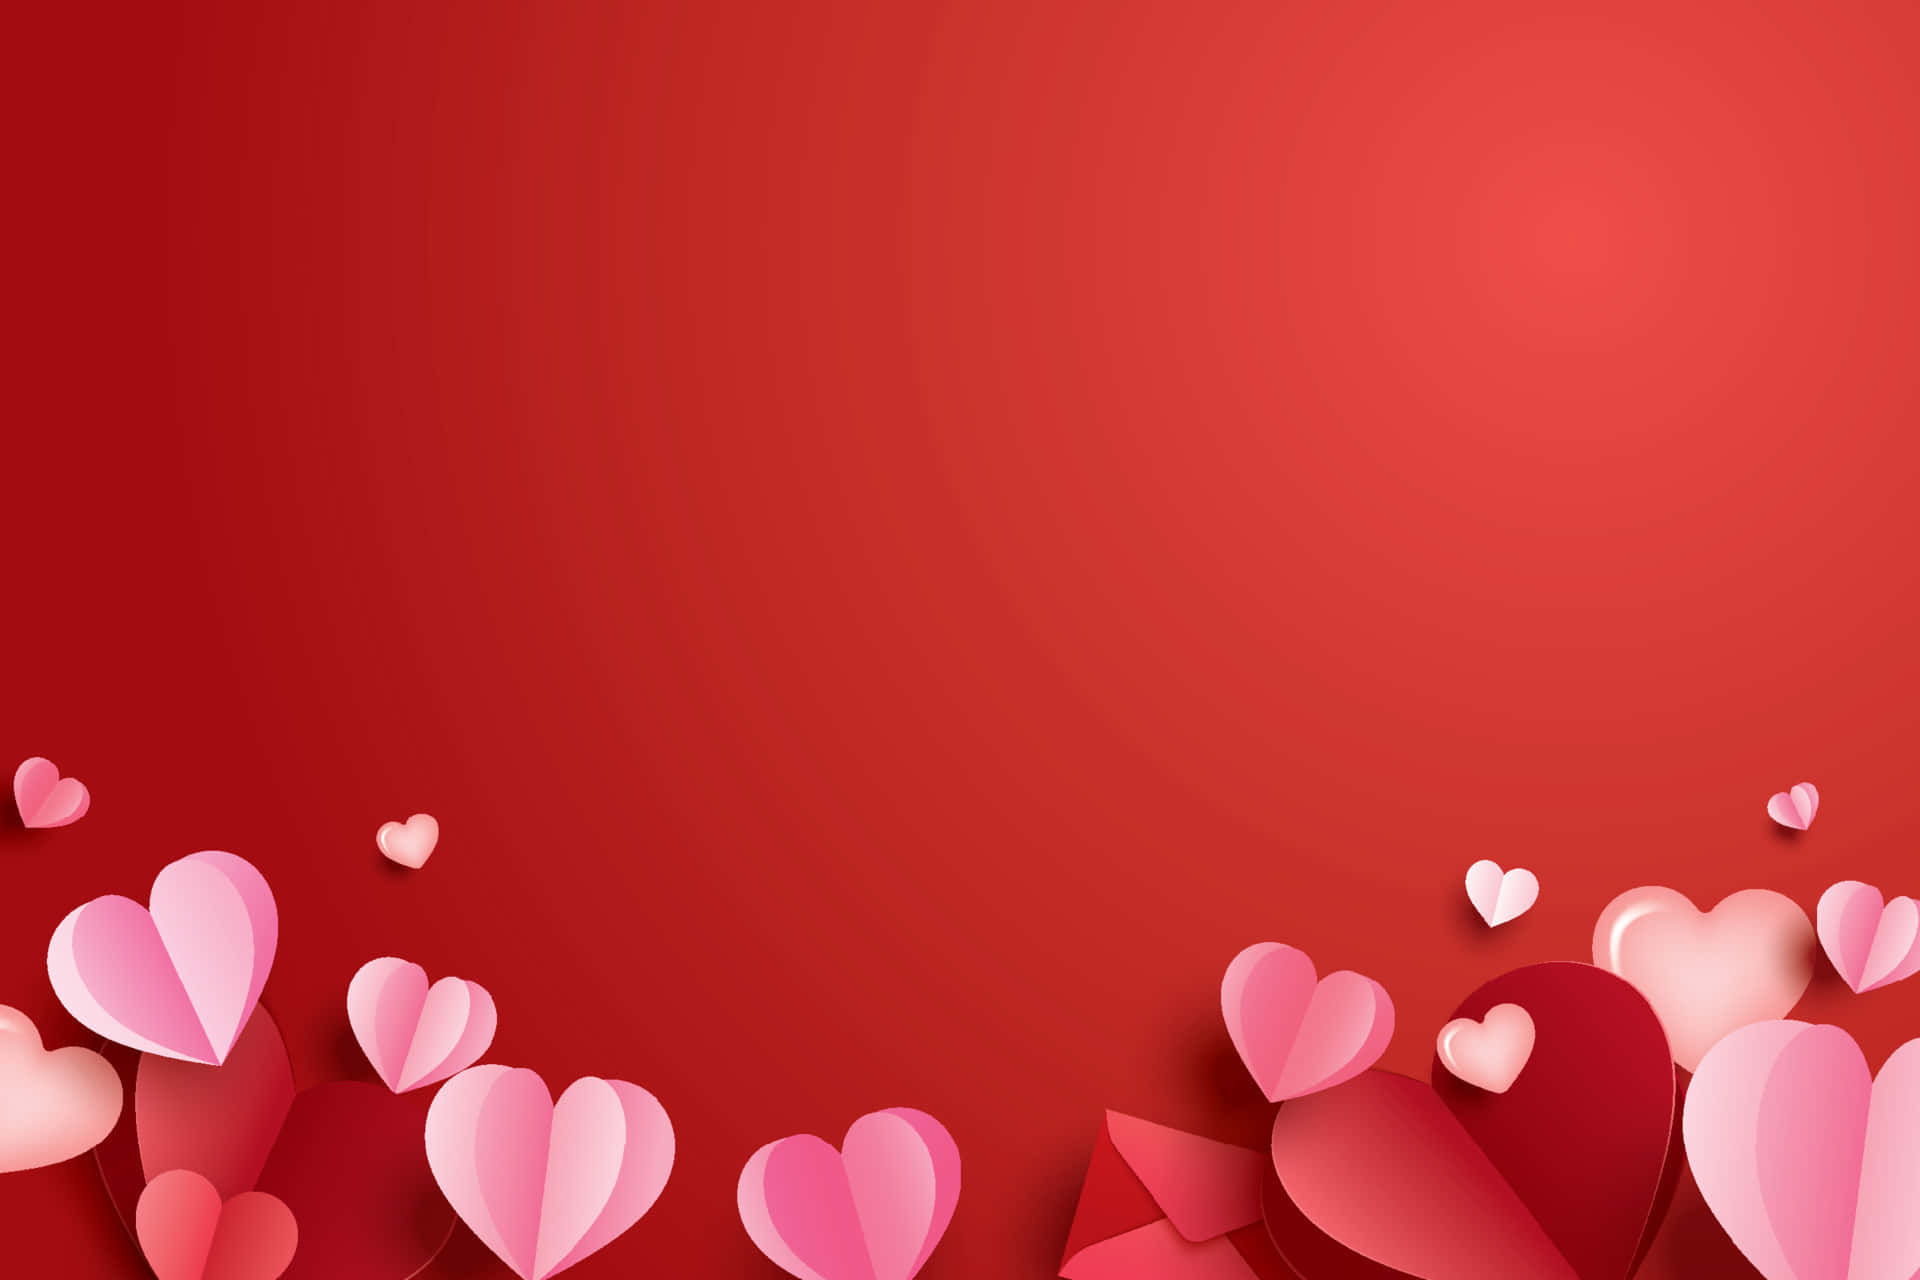 Muestratu Amor En Este Día De San Valentín Con Este Vibrante Fondo En Forma De Corazón.